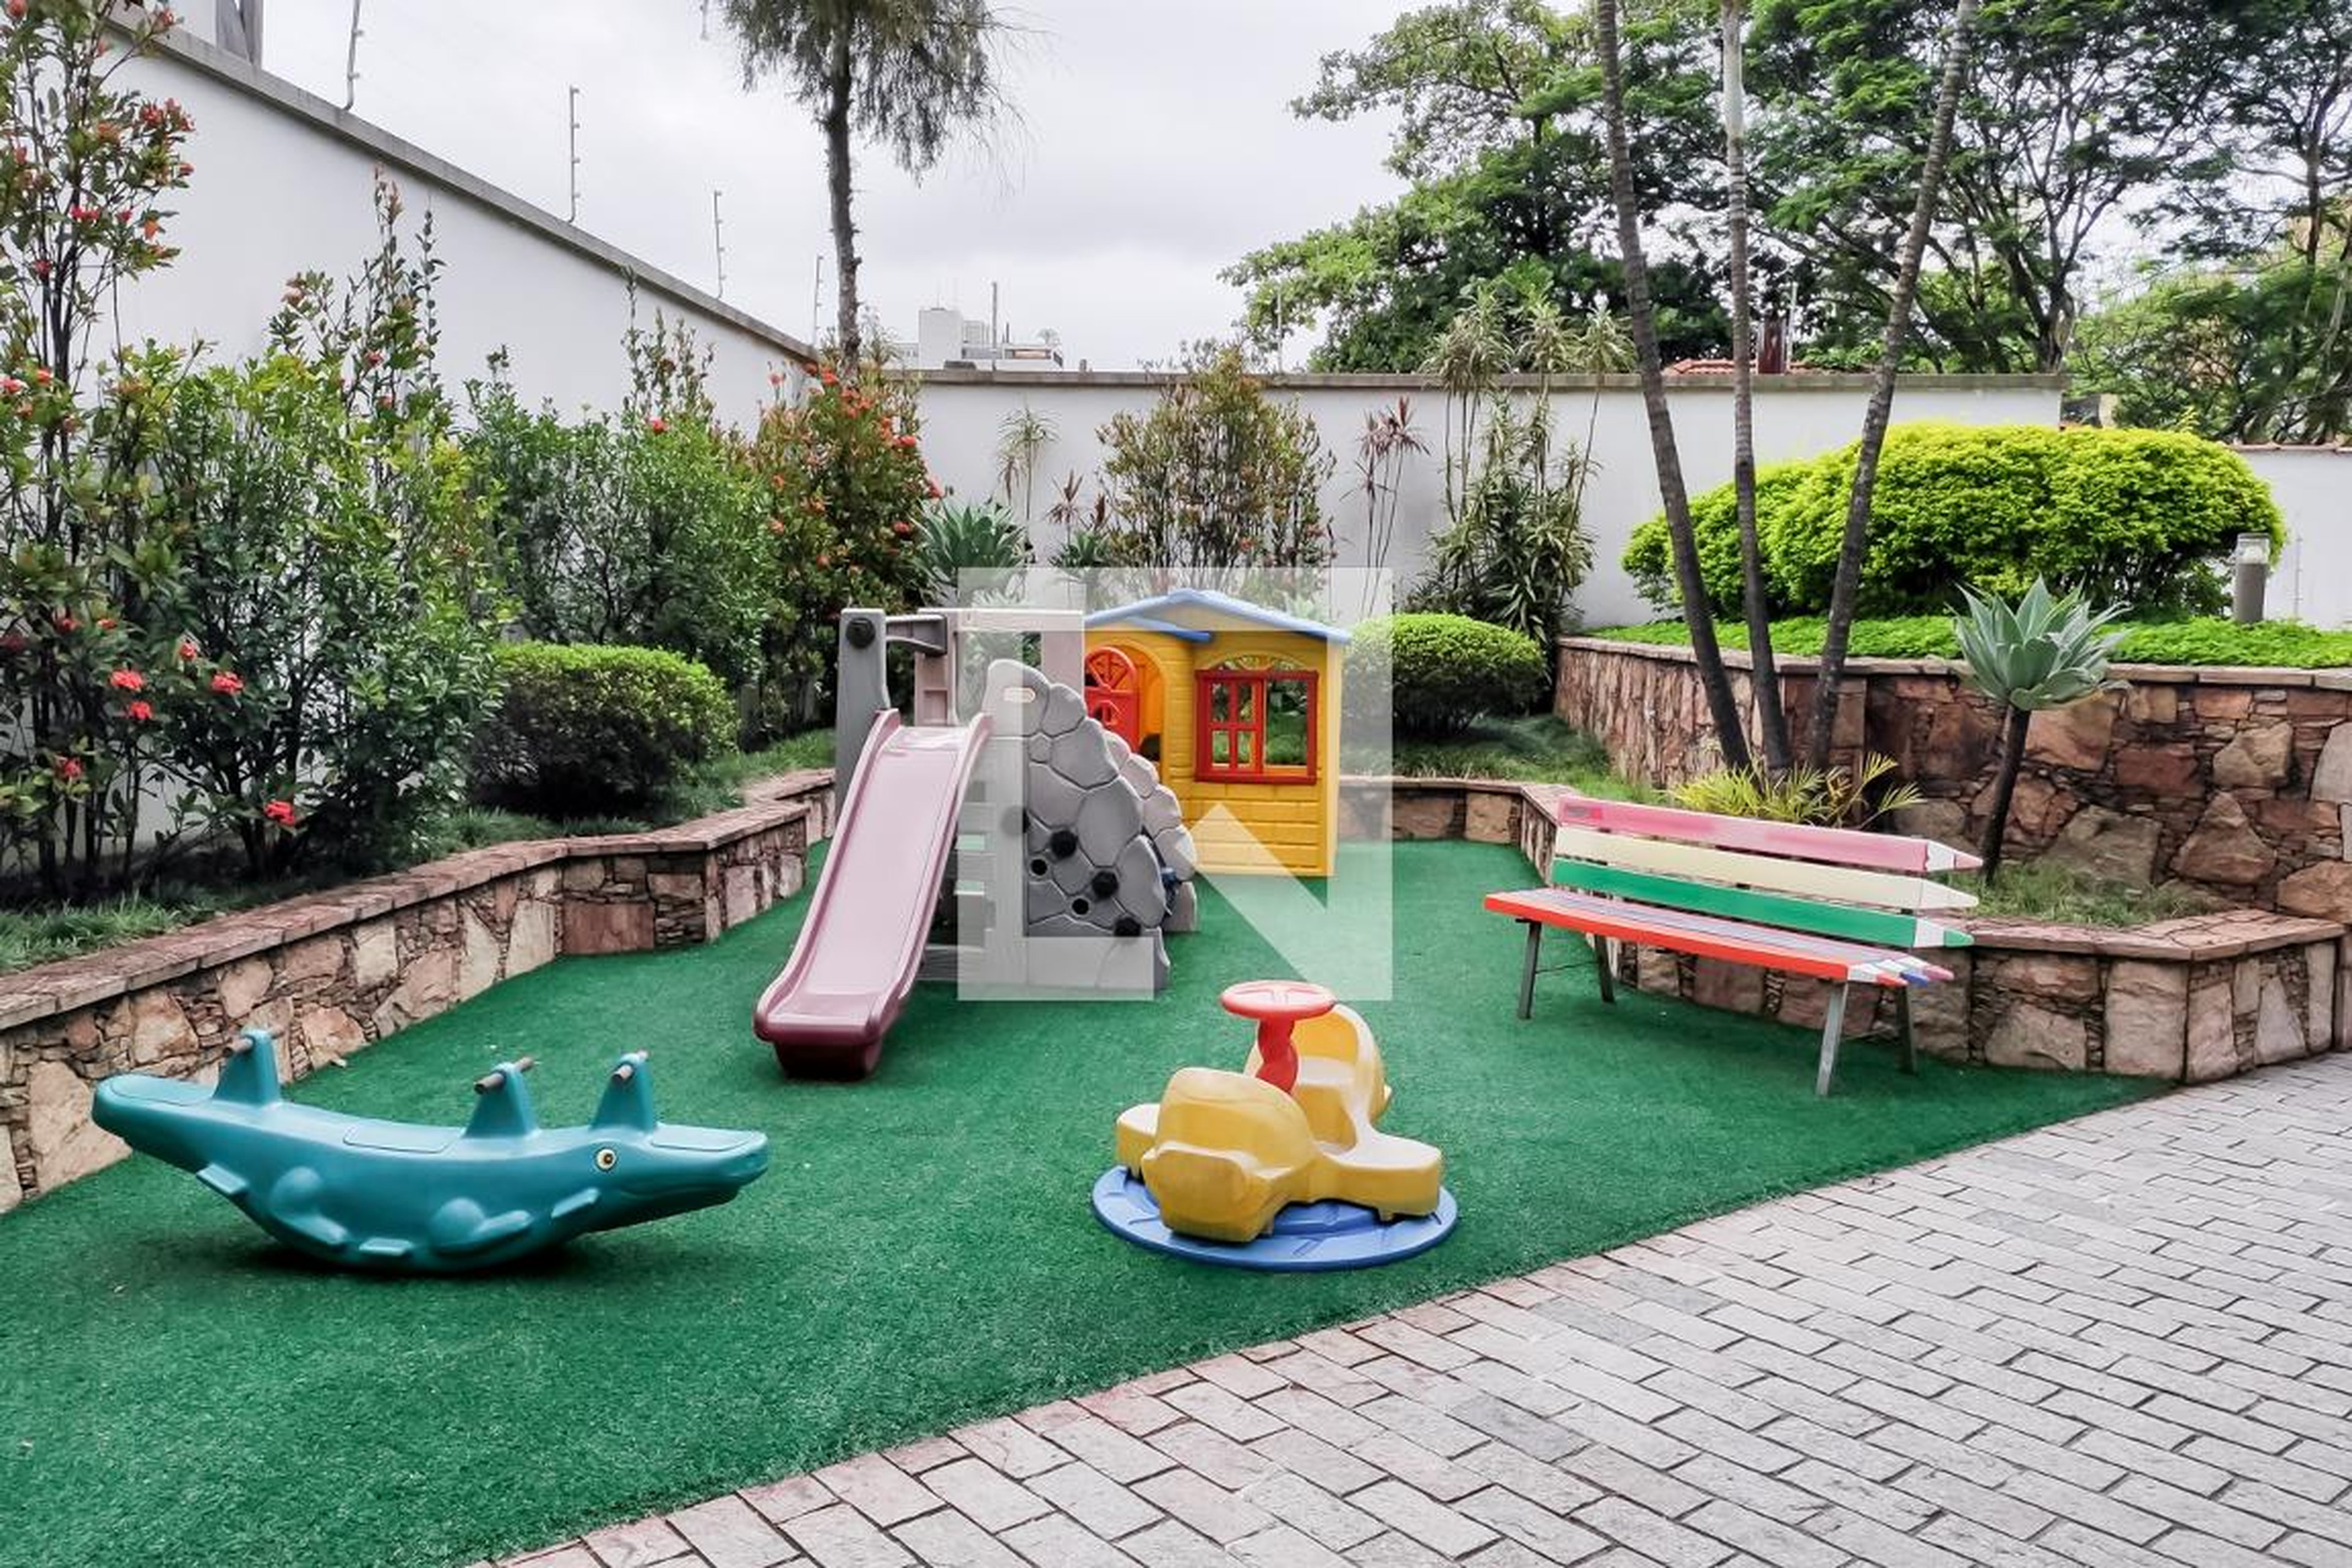 Playground - Jardim dos Ipês